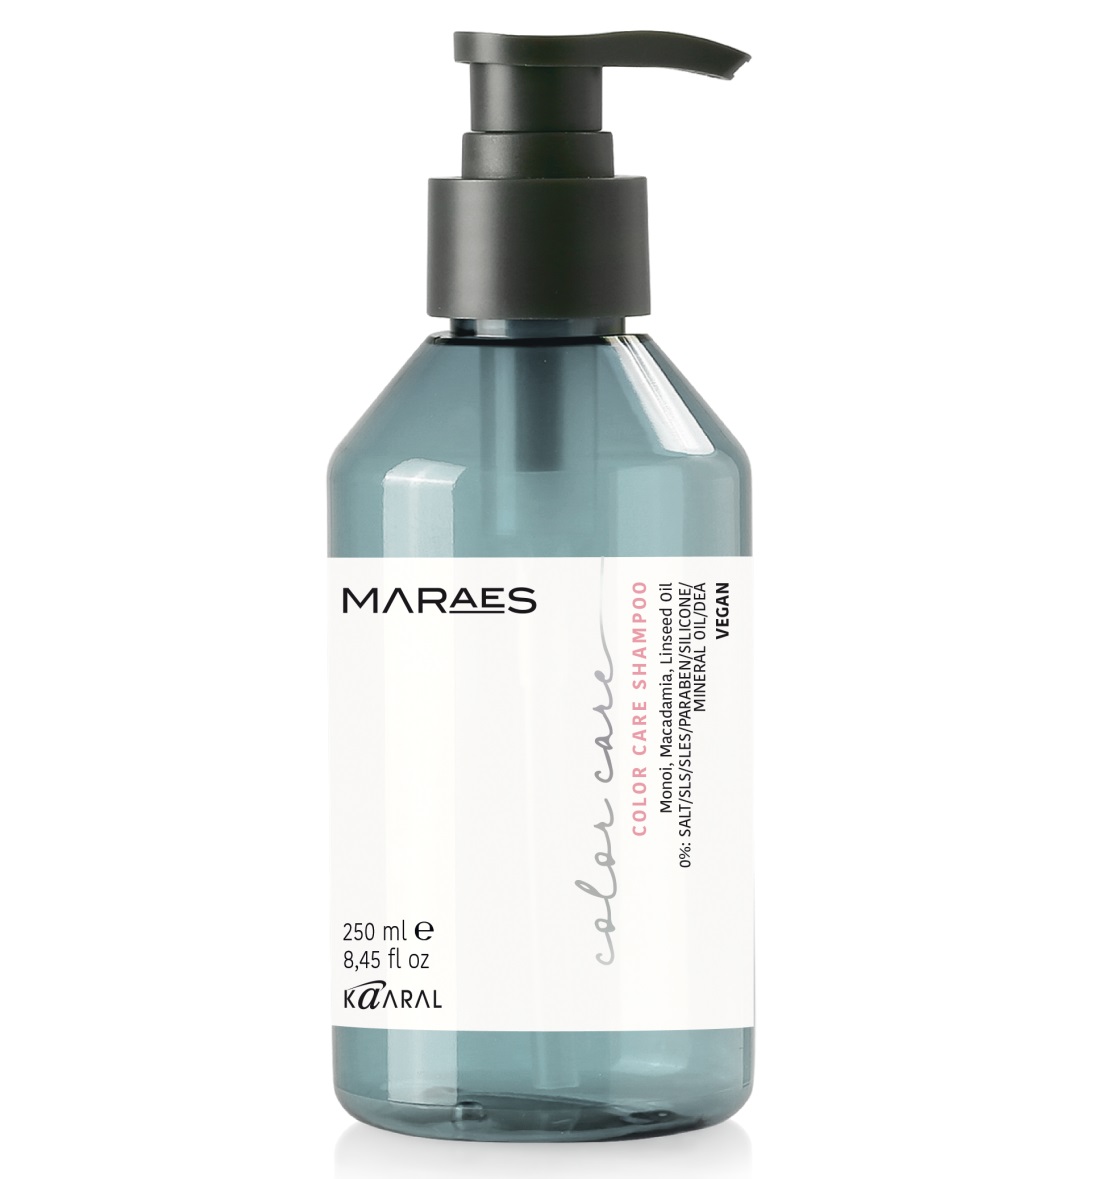 Kaaral Шампунь для окрашенных и химически обработанных волос Color Care Shampoo, 250 мл (Kaaral, Maraes) набор для окрашенных и химически обработанных волос maraes color care шампунь 100мл маска 100мл